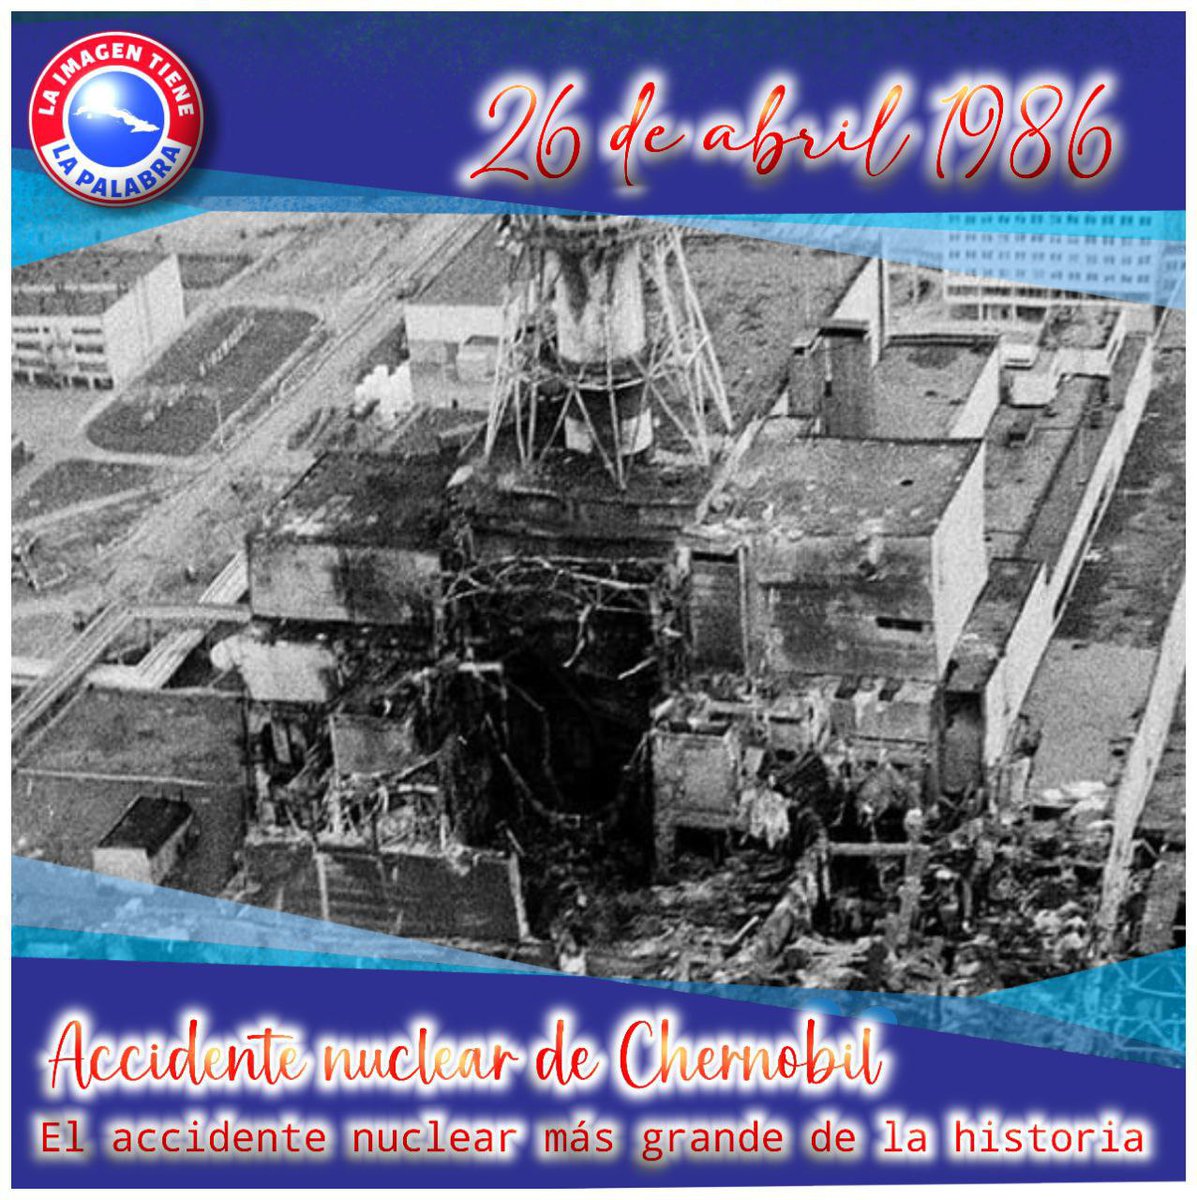 #TenemosMemoria Recordamos éste día el fatal y desastroso accidente de Chernobil 👉 El accidente nuclear más grande de la historia, con fatales consecuencias humanas, pérdidas de tierras y secuelas inimaginables.